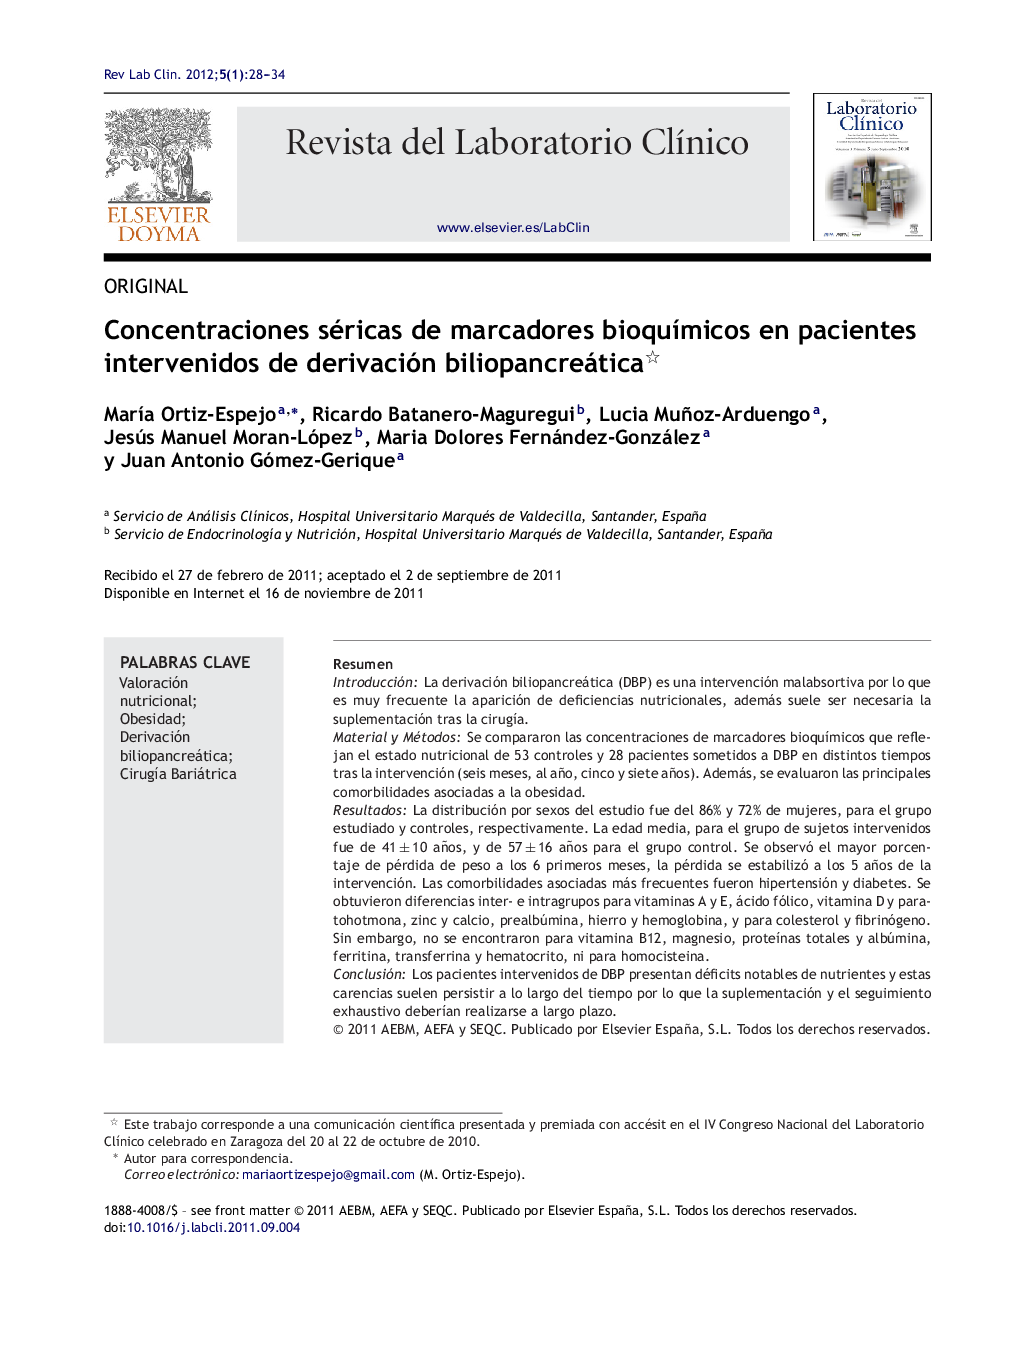 Concentraciones séricas de marcadores bioquÃ­micos en pacientes intervenidos de derivación biliopancreática